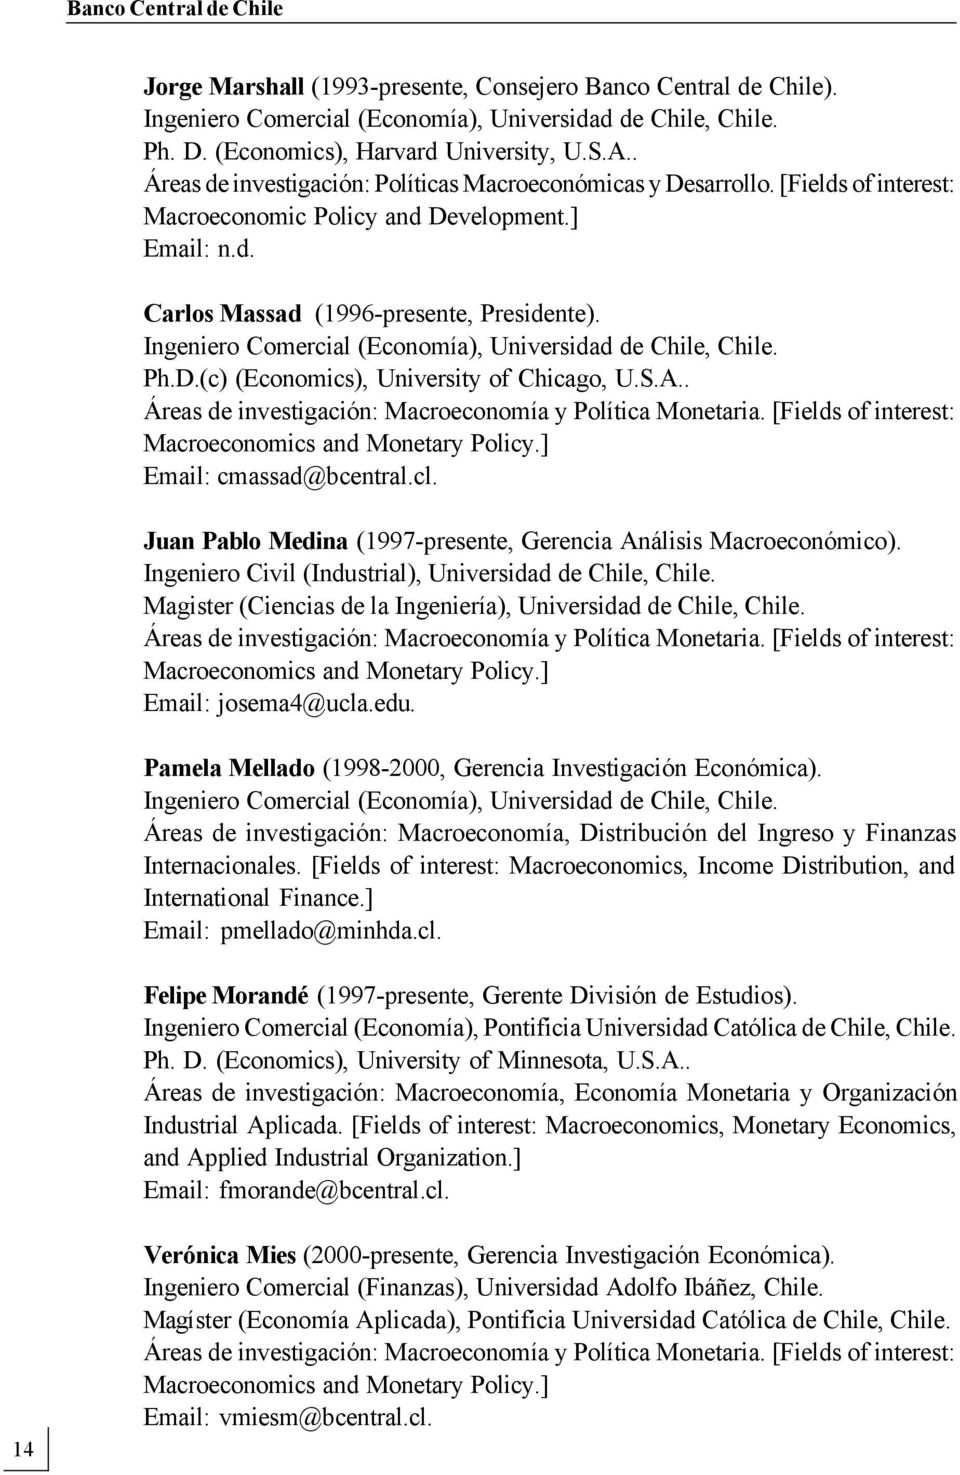 Ingeniero Comercial (Economía), Universidad de Chile, Chile. Ph.D.(c) (Economics), University of Chicago, U.S.A.. Áreas de investigación: Macroeconomía y Política Monetaria.